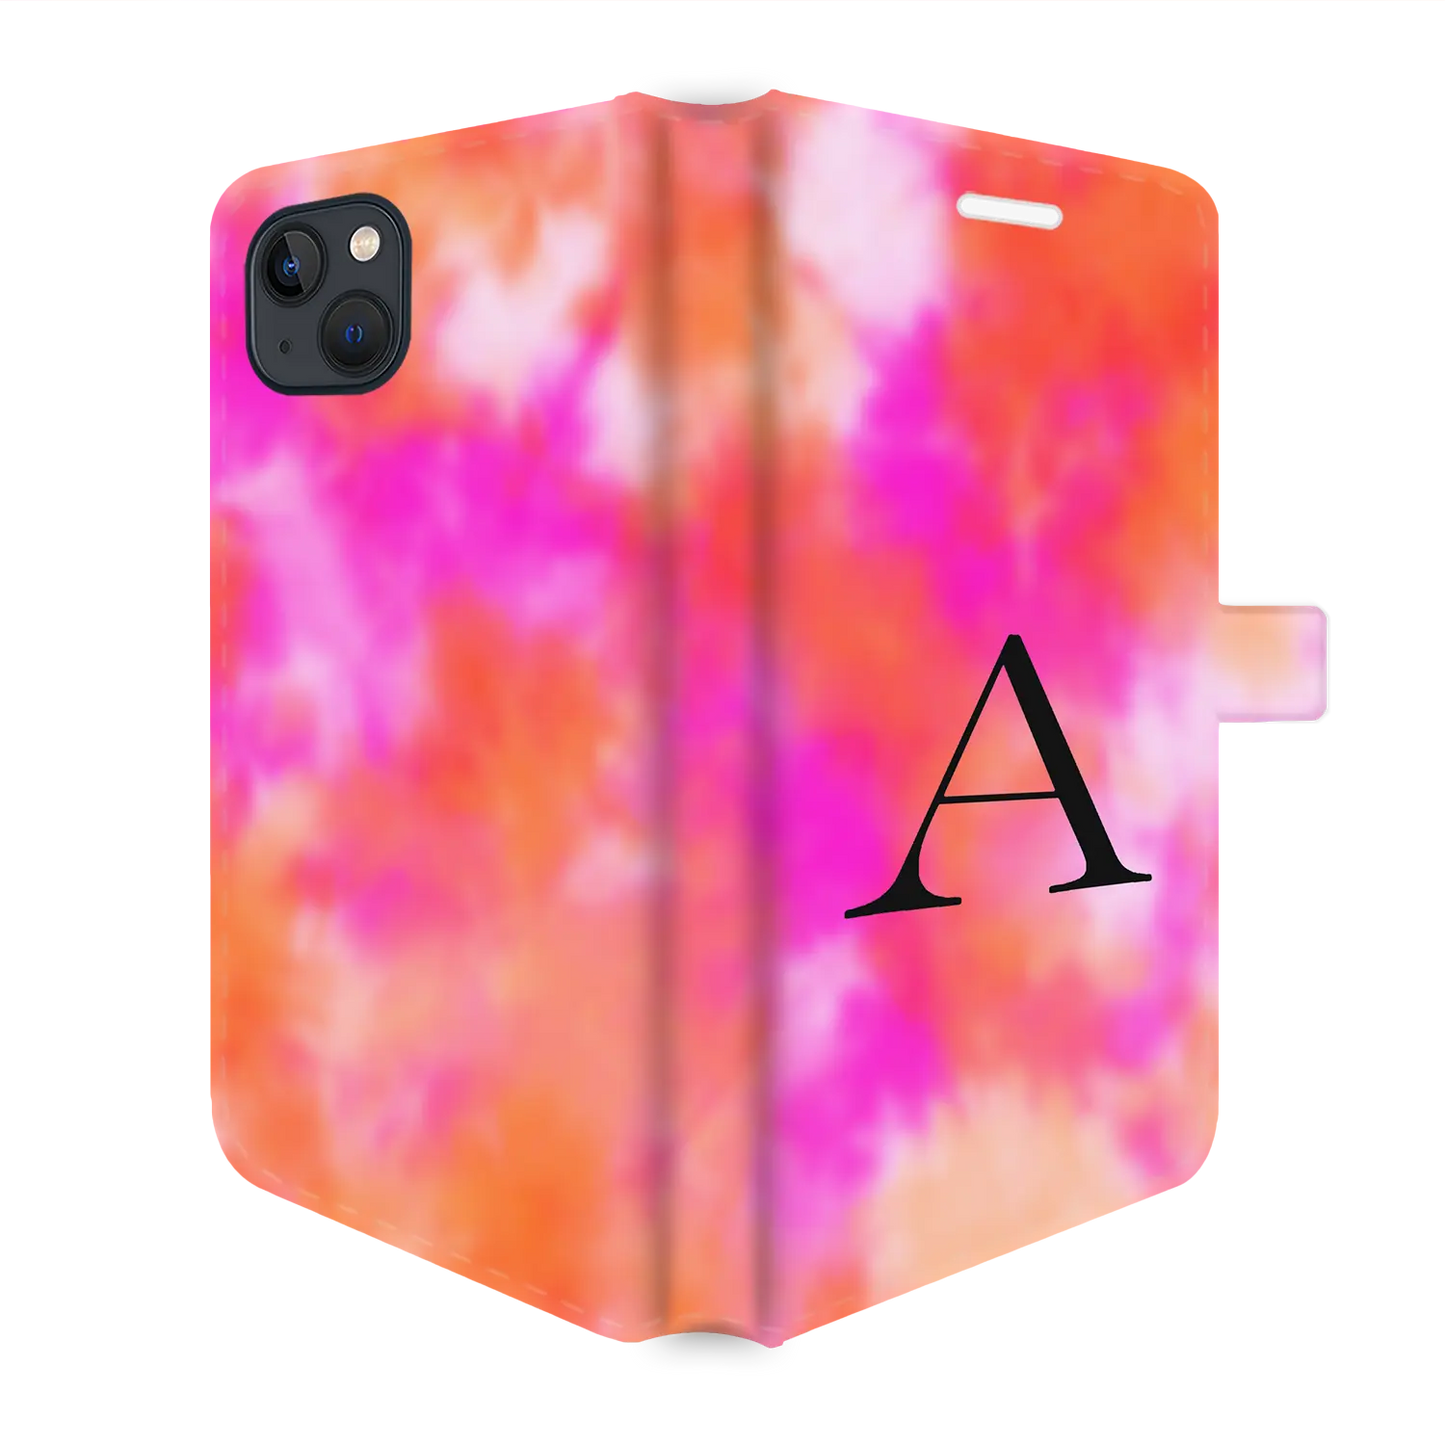 Tie Dye - Personalised iPhone Case